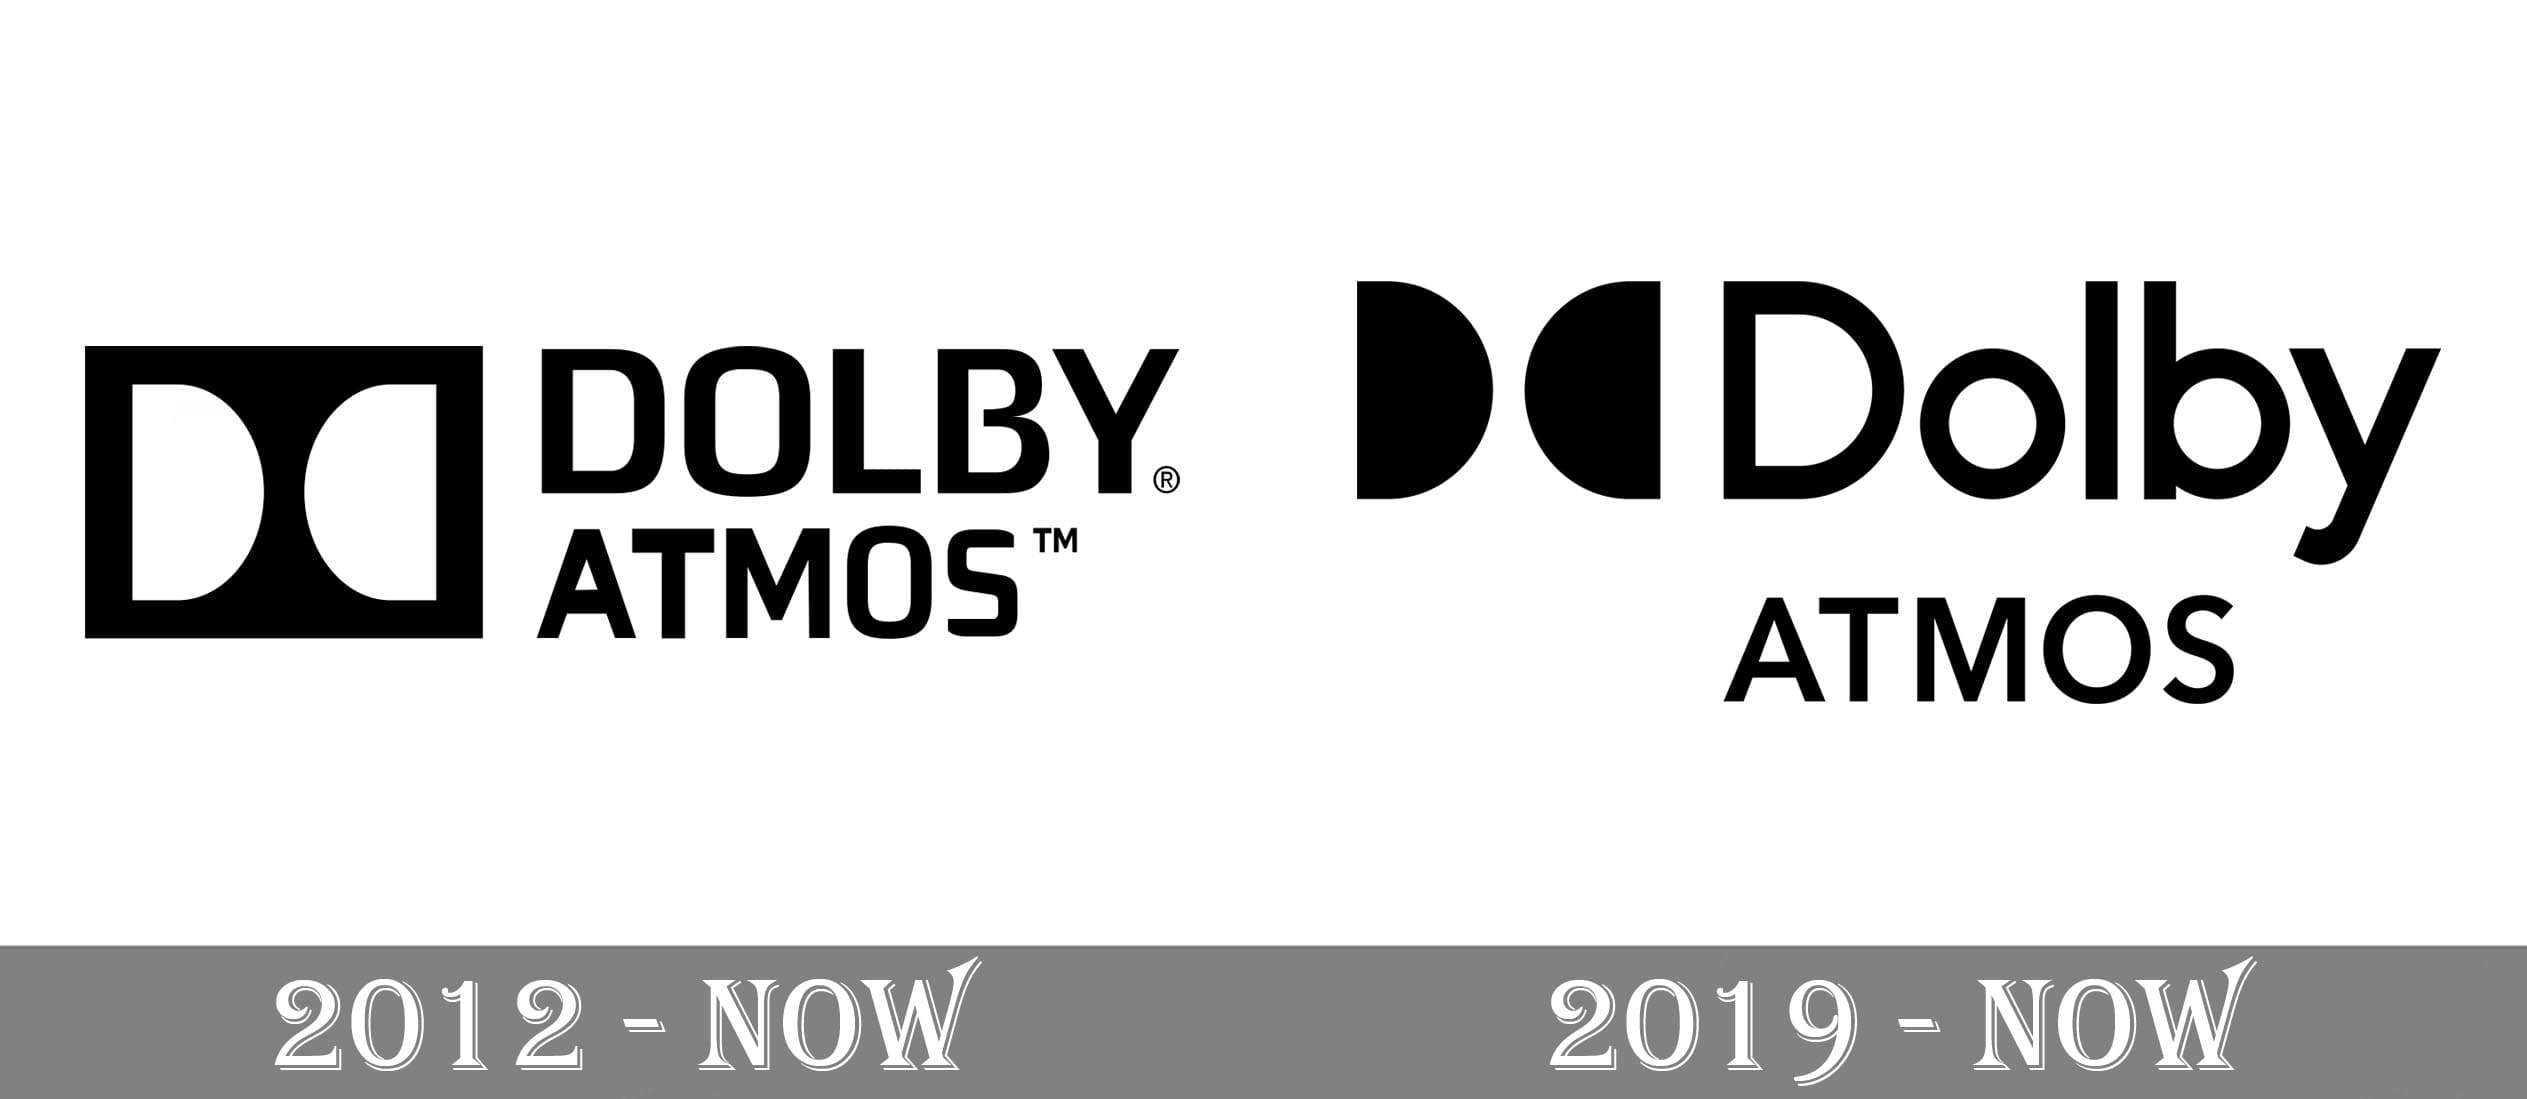 dolby 5.1 logo